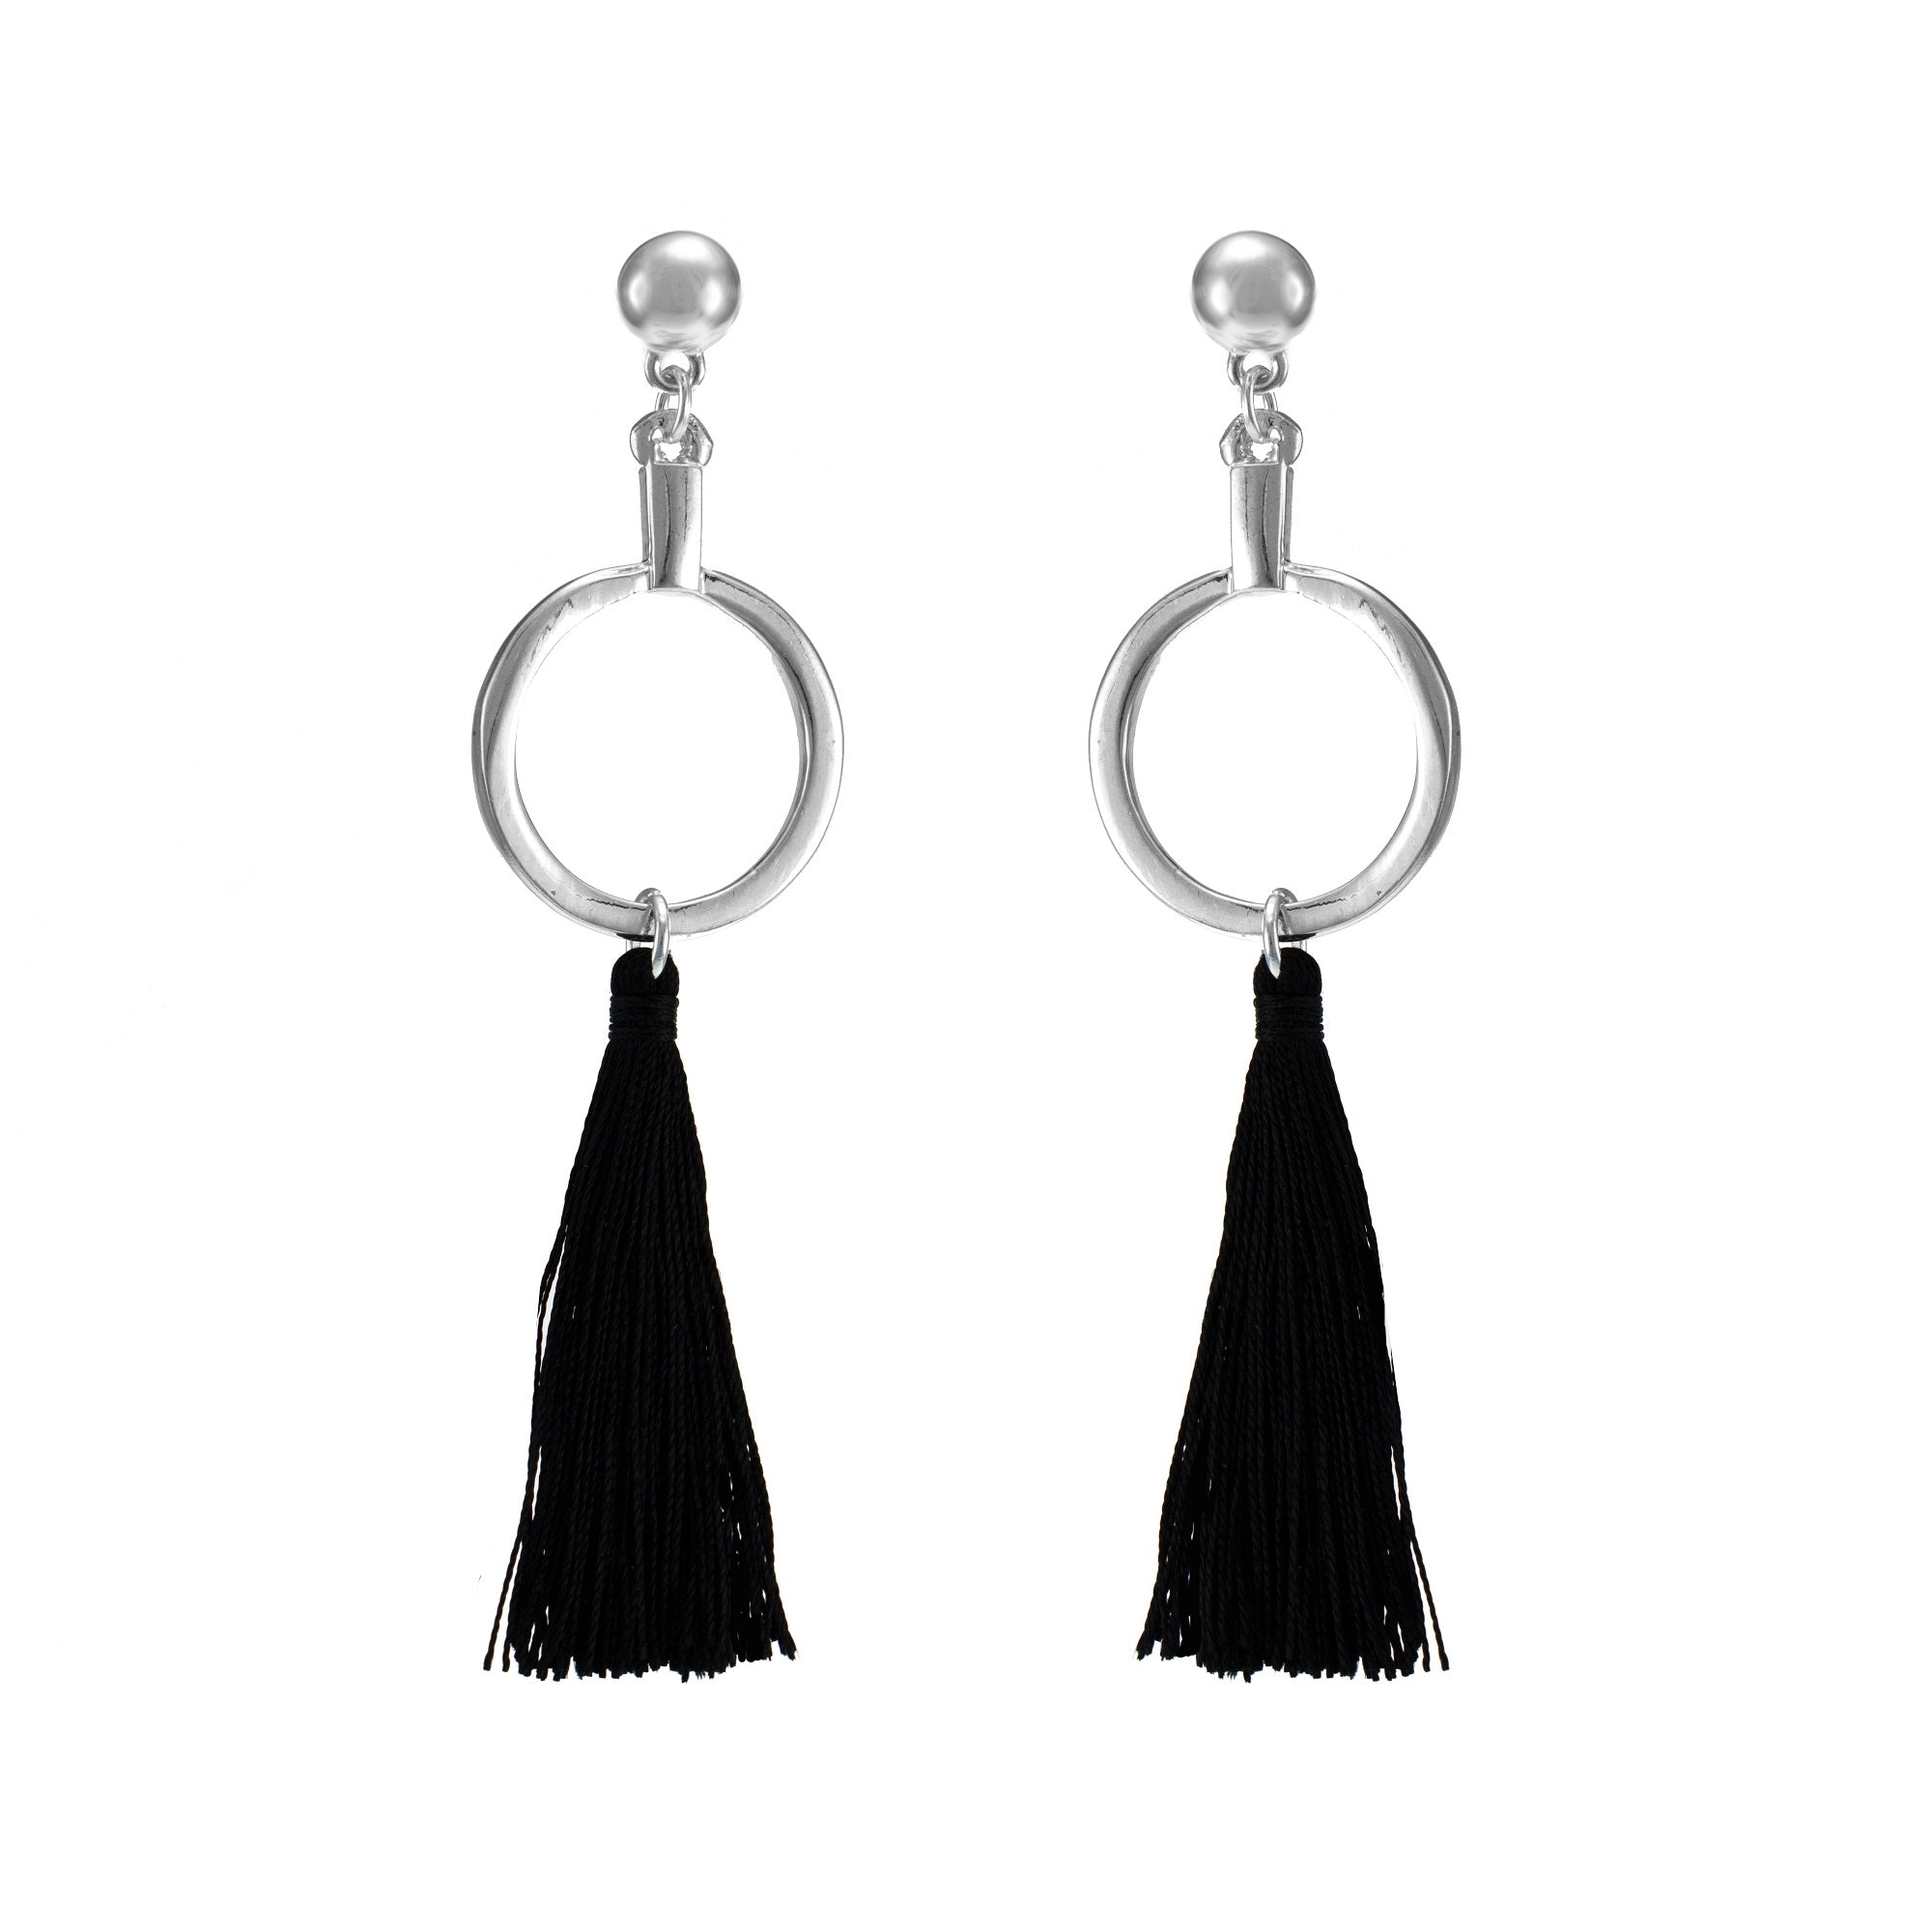 Merx fashion jewellery black tassel earrings 